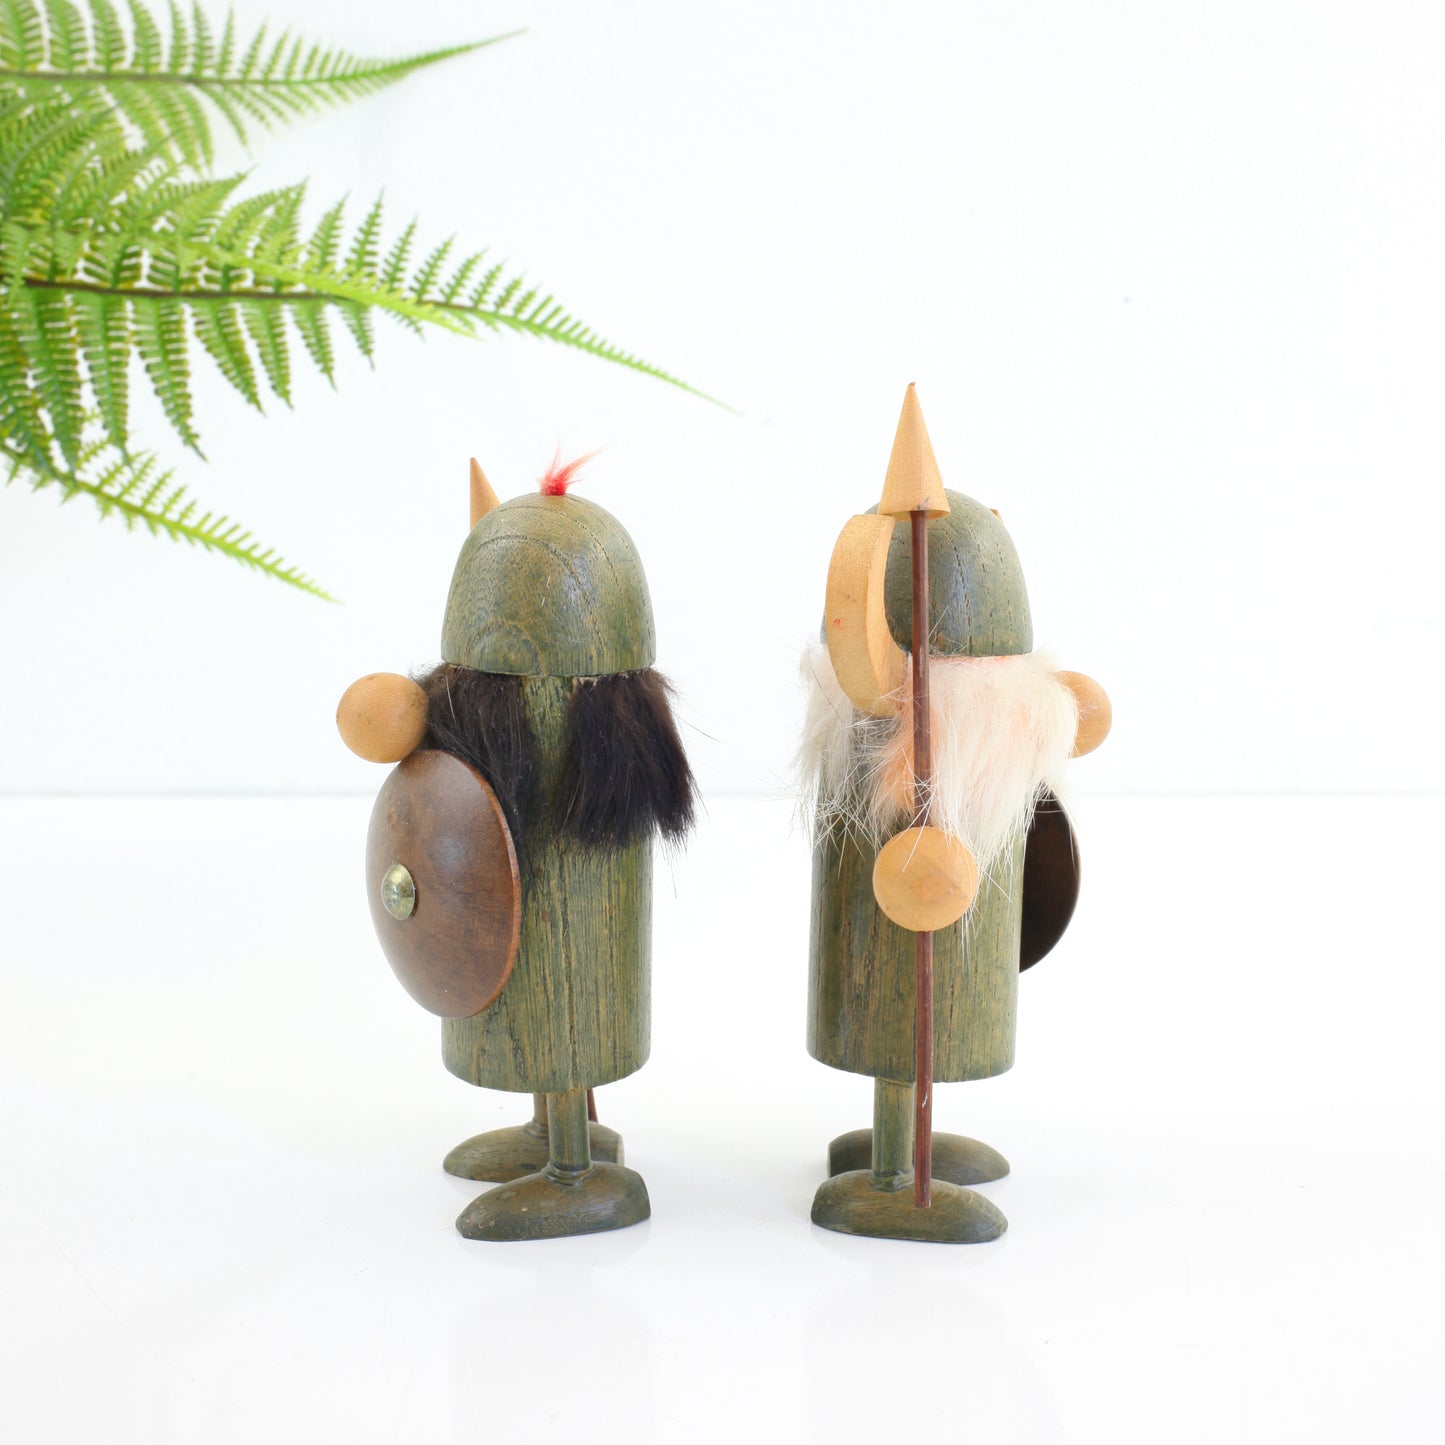 SOLD - Pair of Vintage Wood Viking Figurines